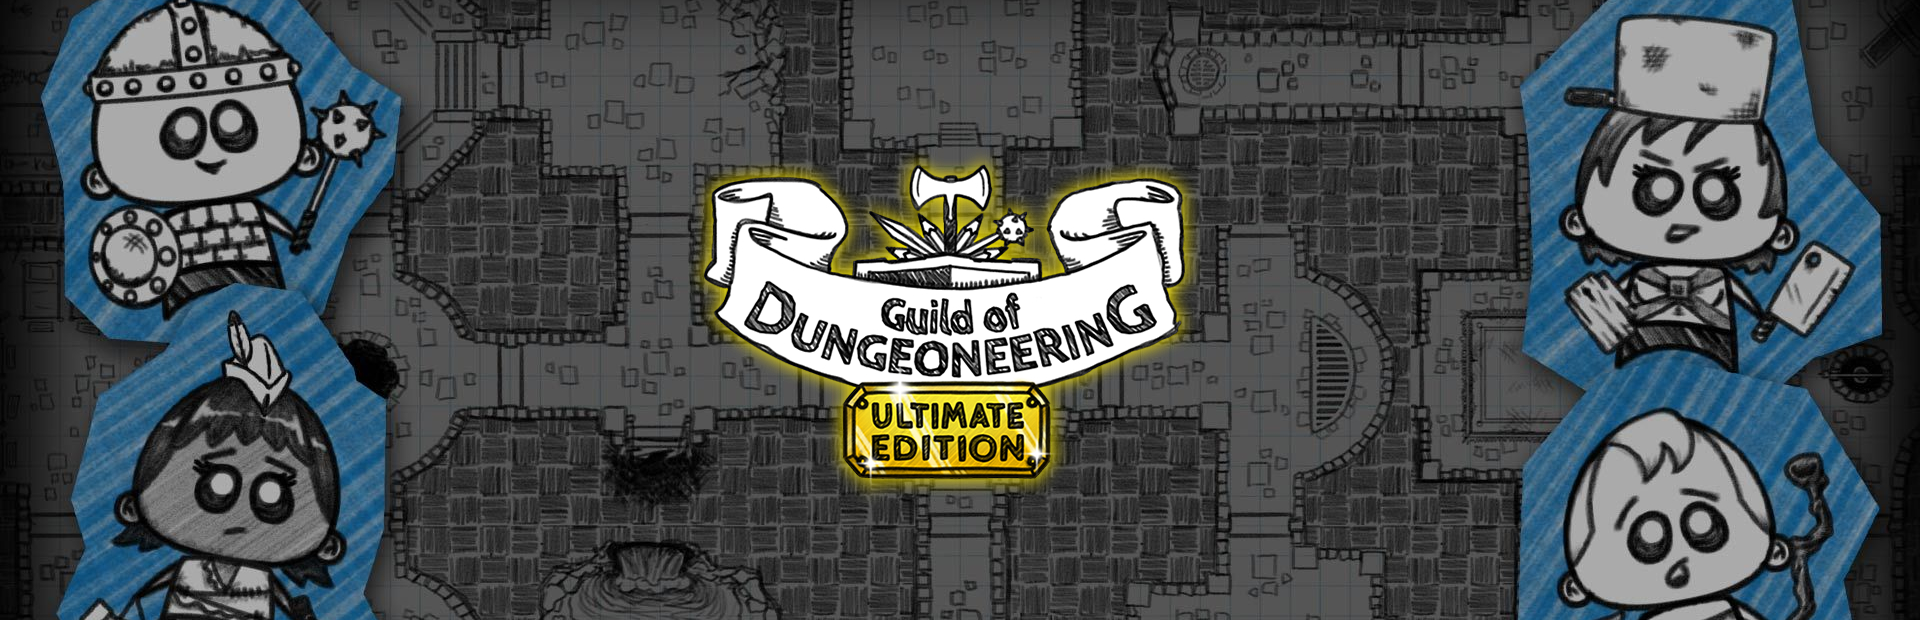 دانلود بازی Guild of Dungeoneering Ultimate Edition برای PC | گیمباتو